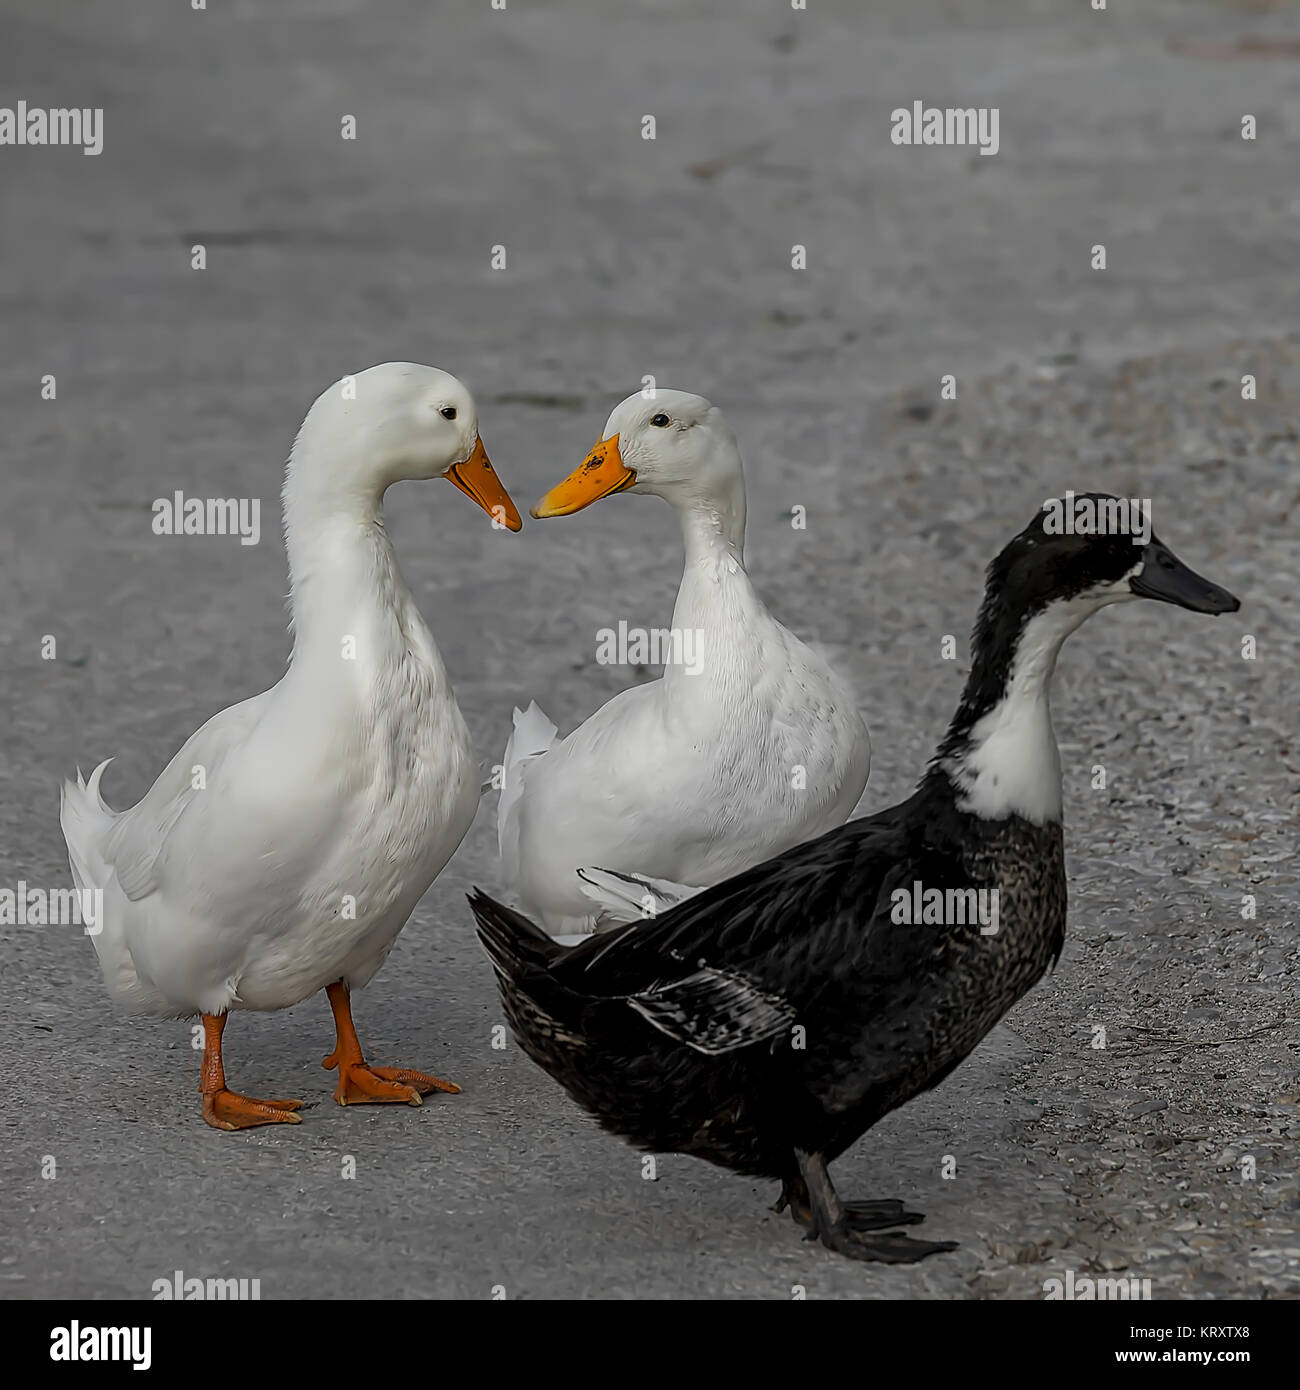 Tres patos caminando por una calle de la aldea. Dos patos blancos besar mutuamente formando una forma corazón mientras el black duck está mirando a otro lado. Foto de stock